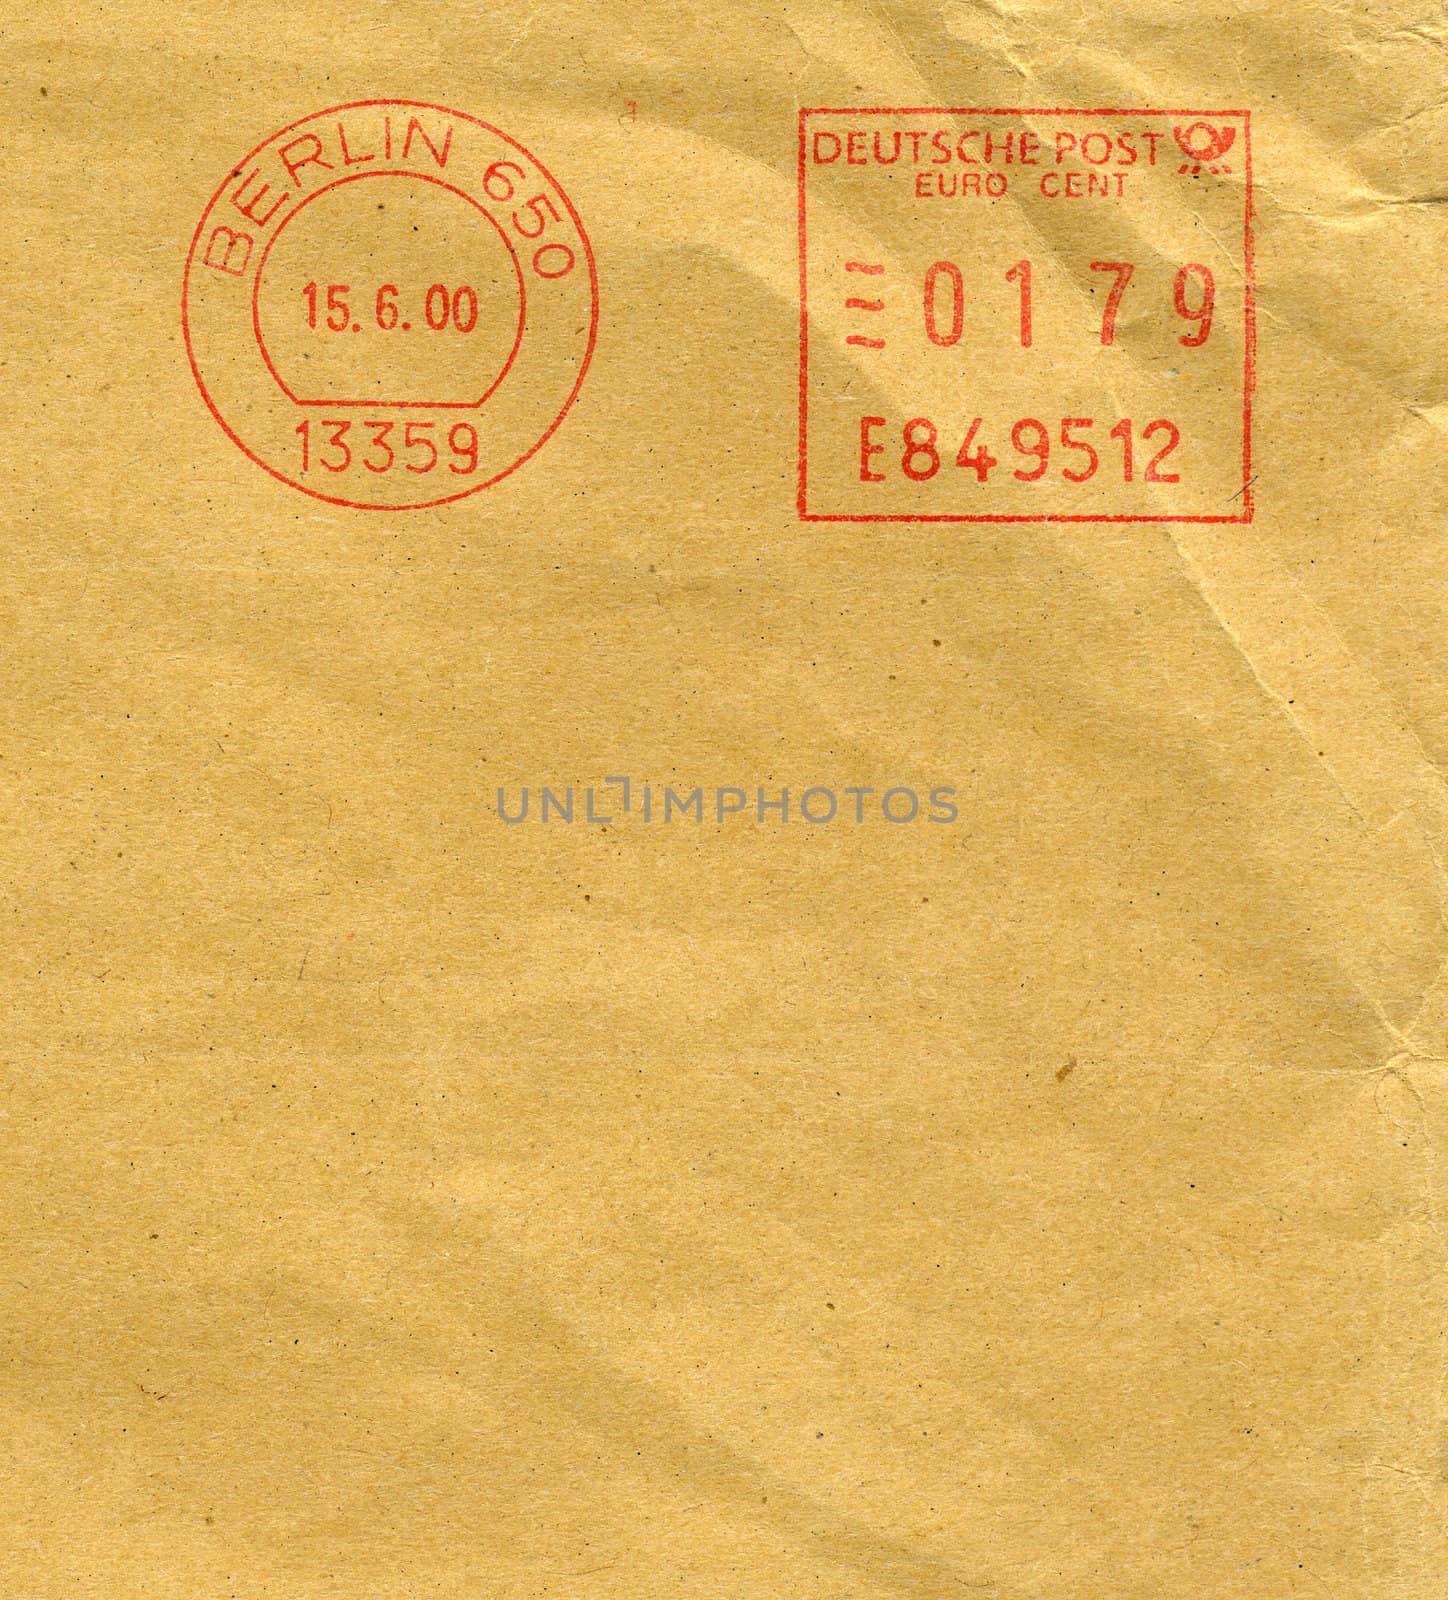 Deutsche post mail from Berlin